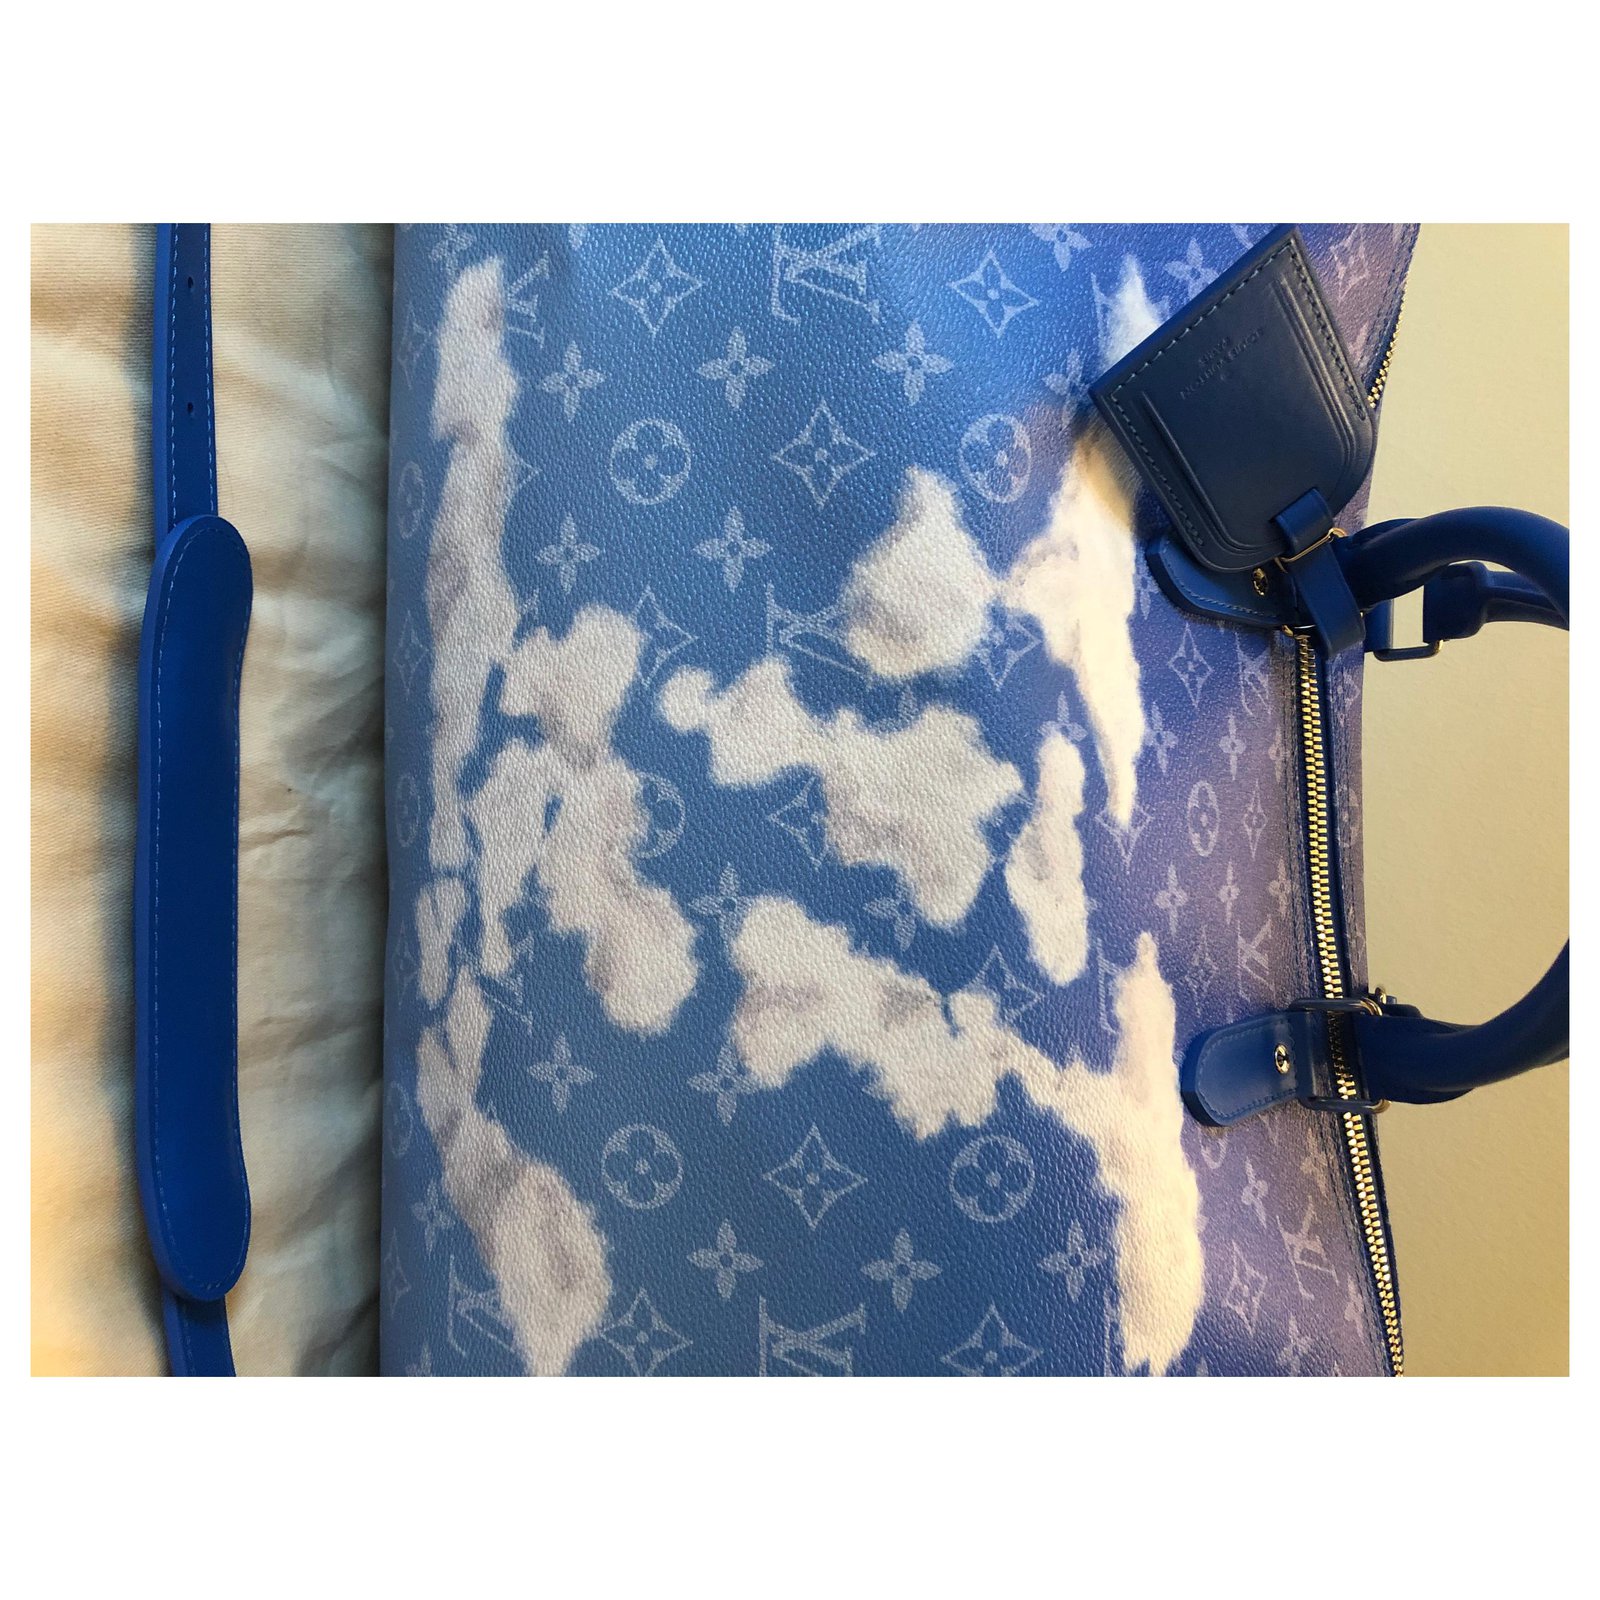 Louis Vuitton on X: #LVMenFW20 A Keepall with a cloud motif from